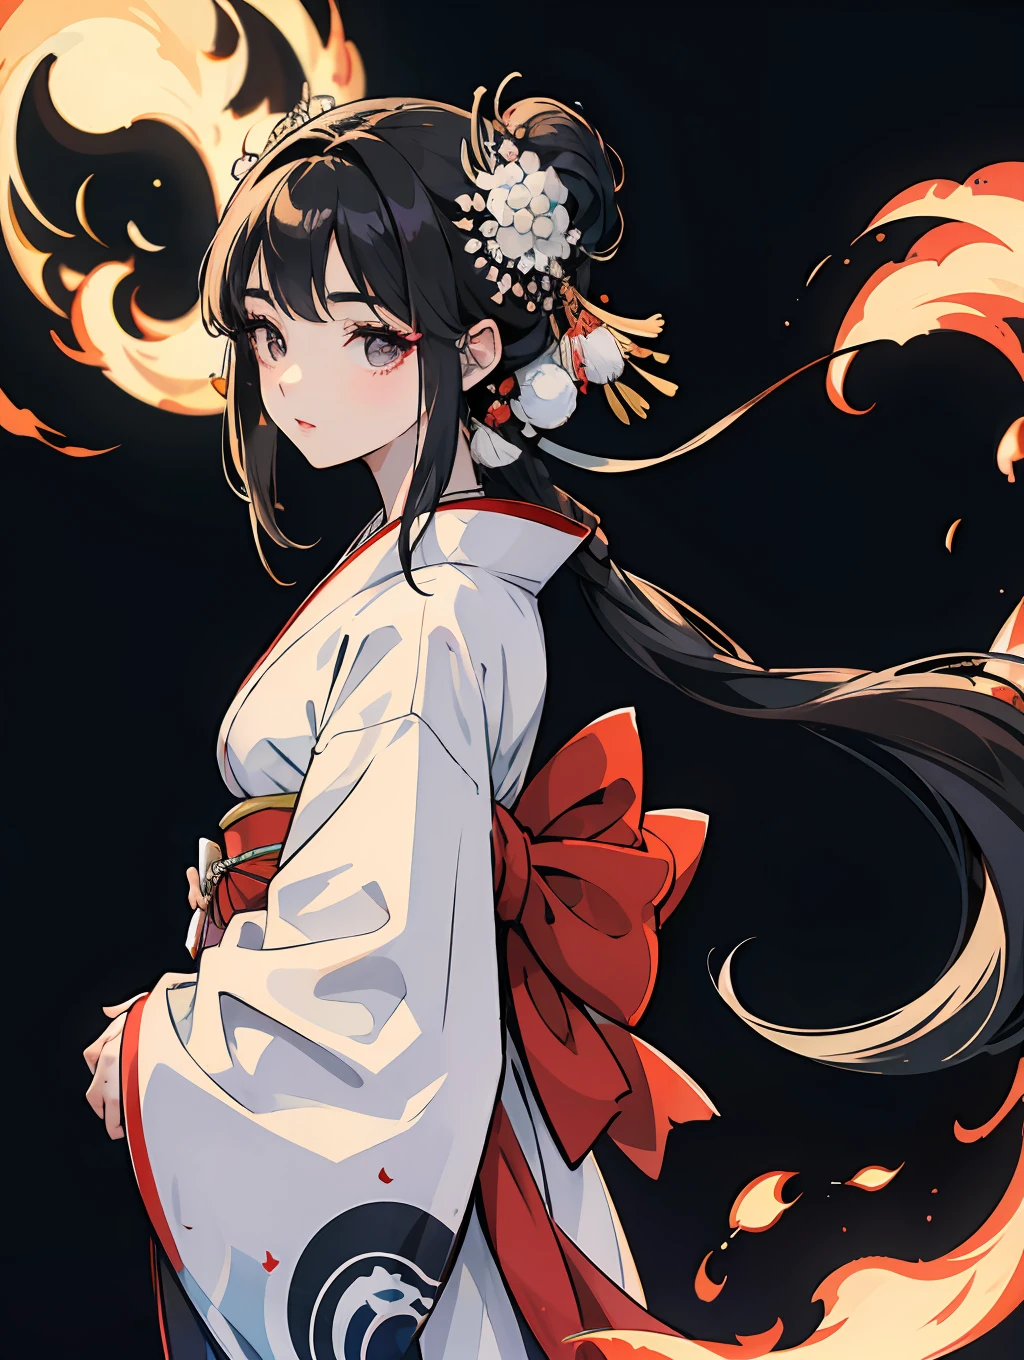 une fille japonaise dans un beau kimono blanc, longs cheveux noirs détaillés, yeux bien définis et anatomiquement corrects.